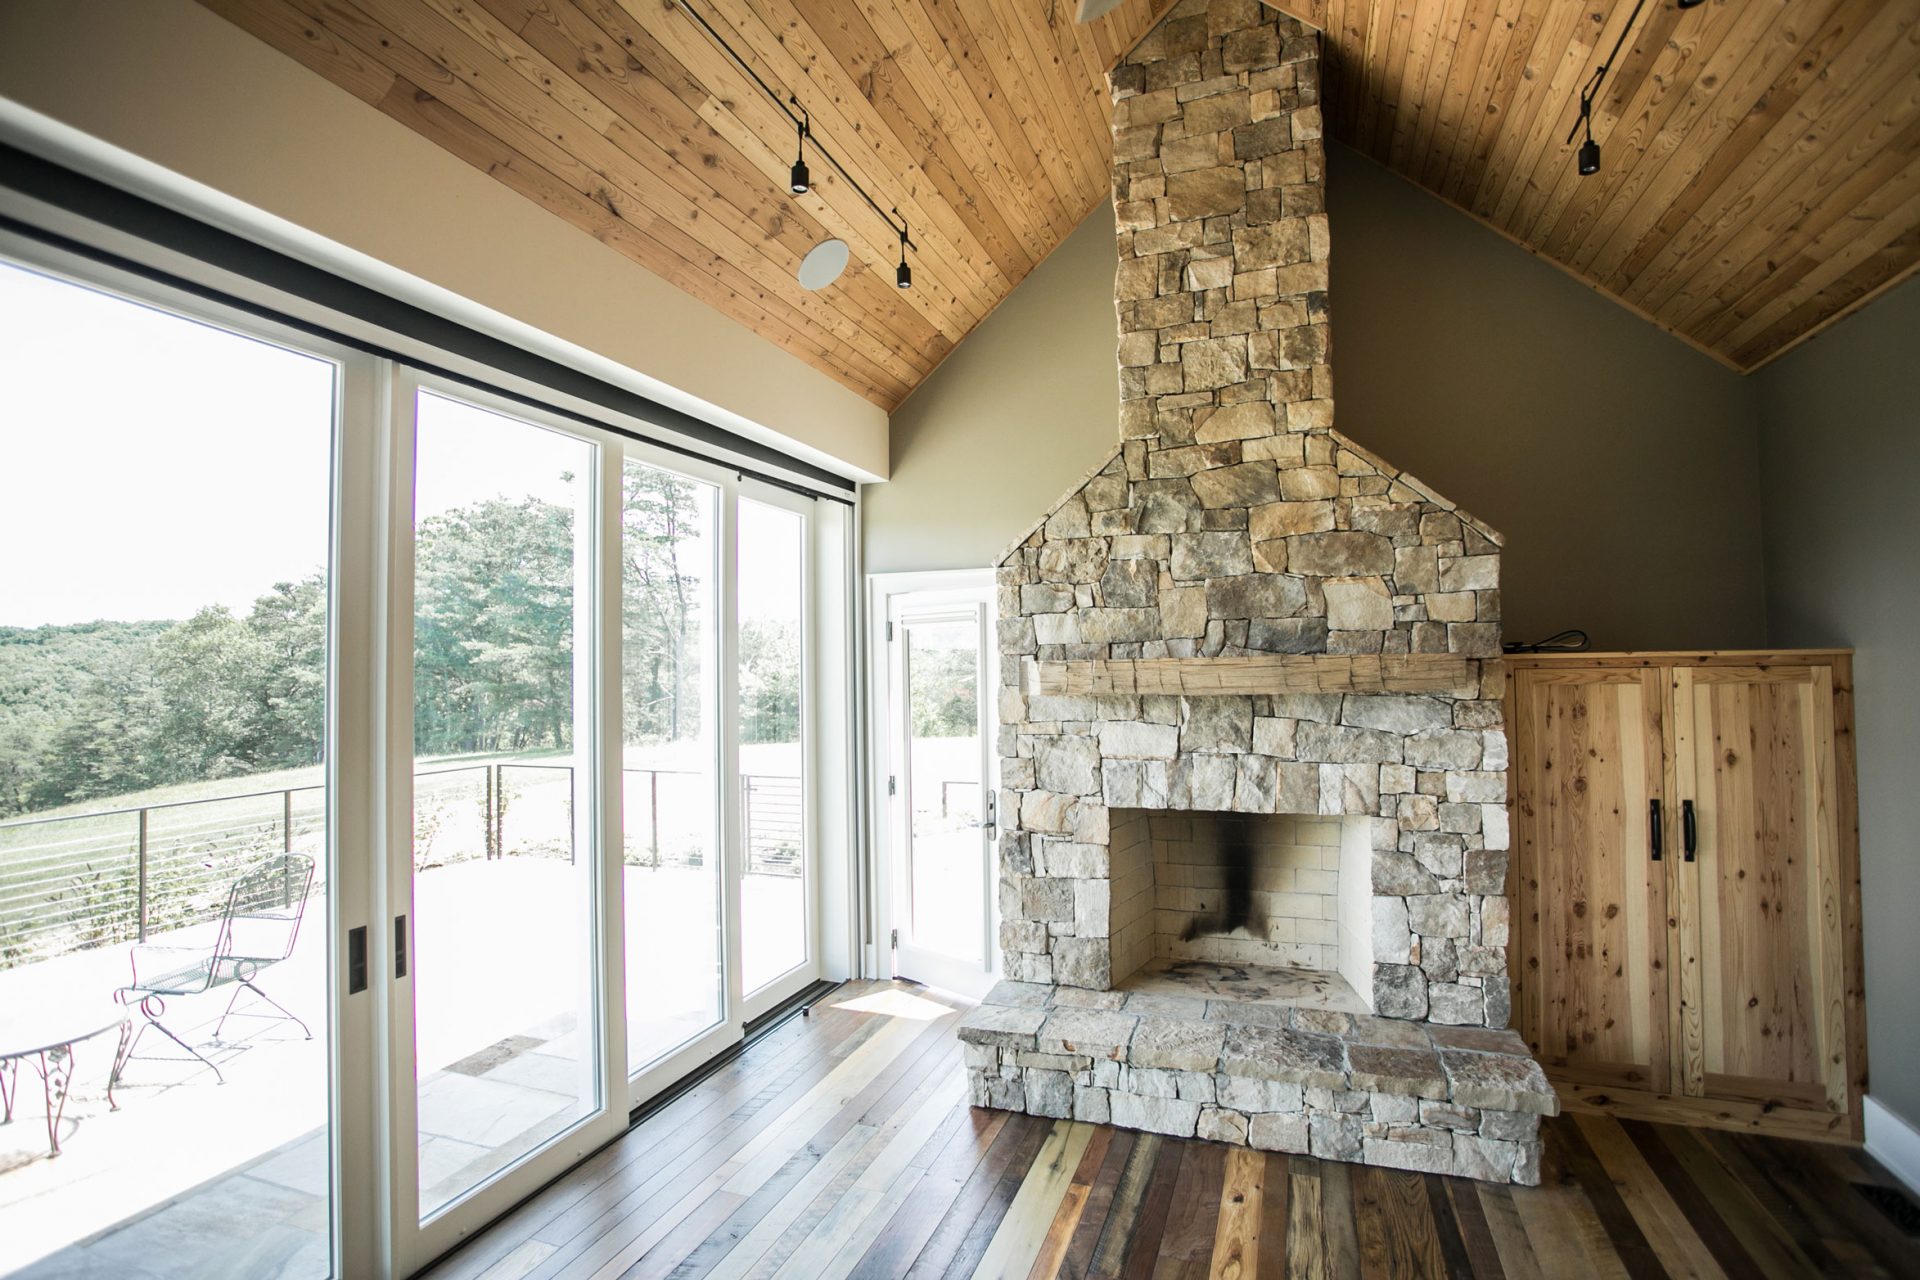 Image of Shenandoah Blend wood flooring with stone fireplace